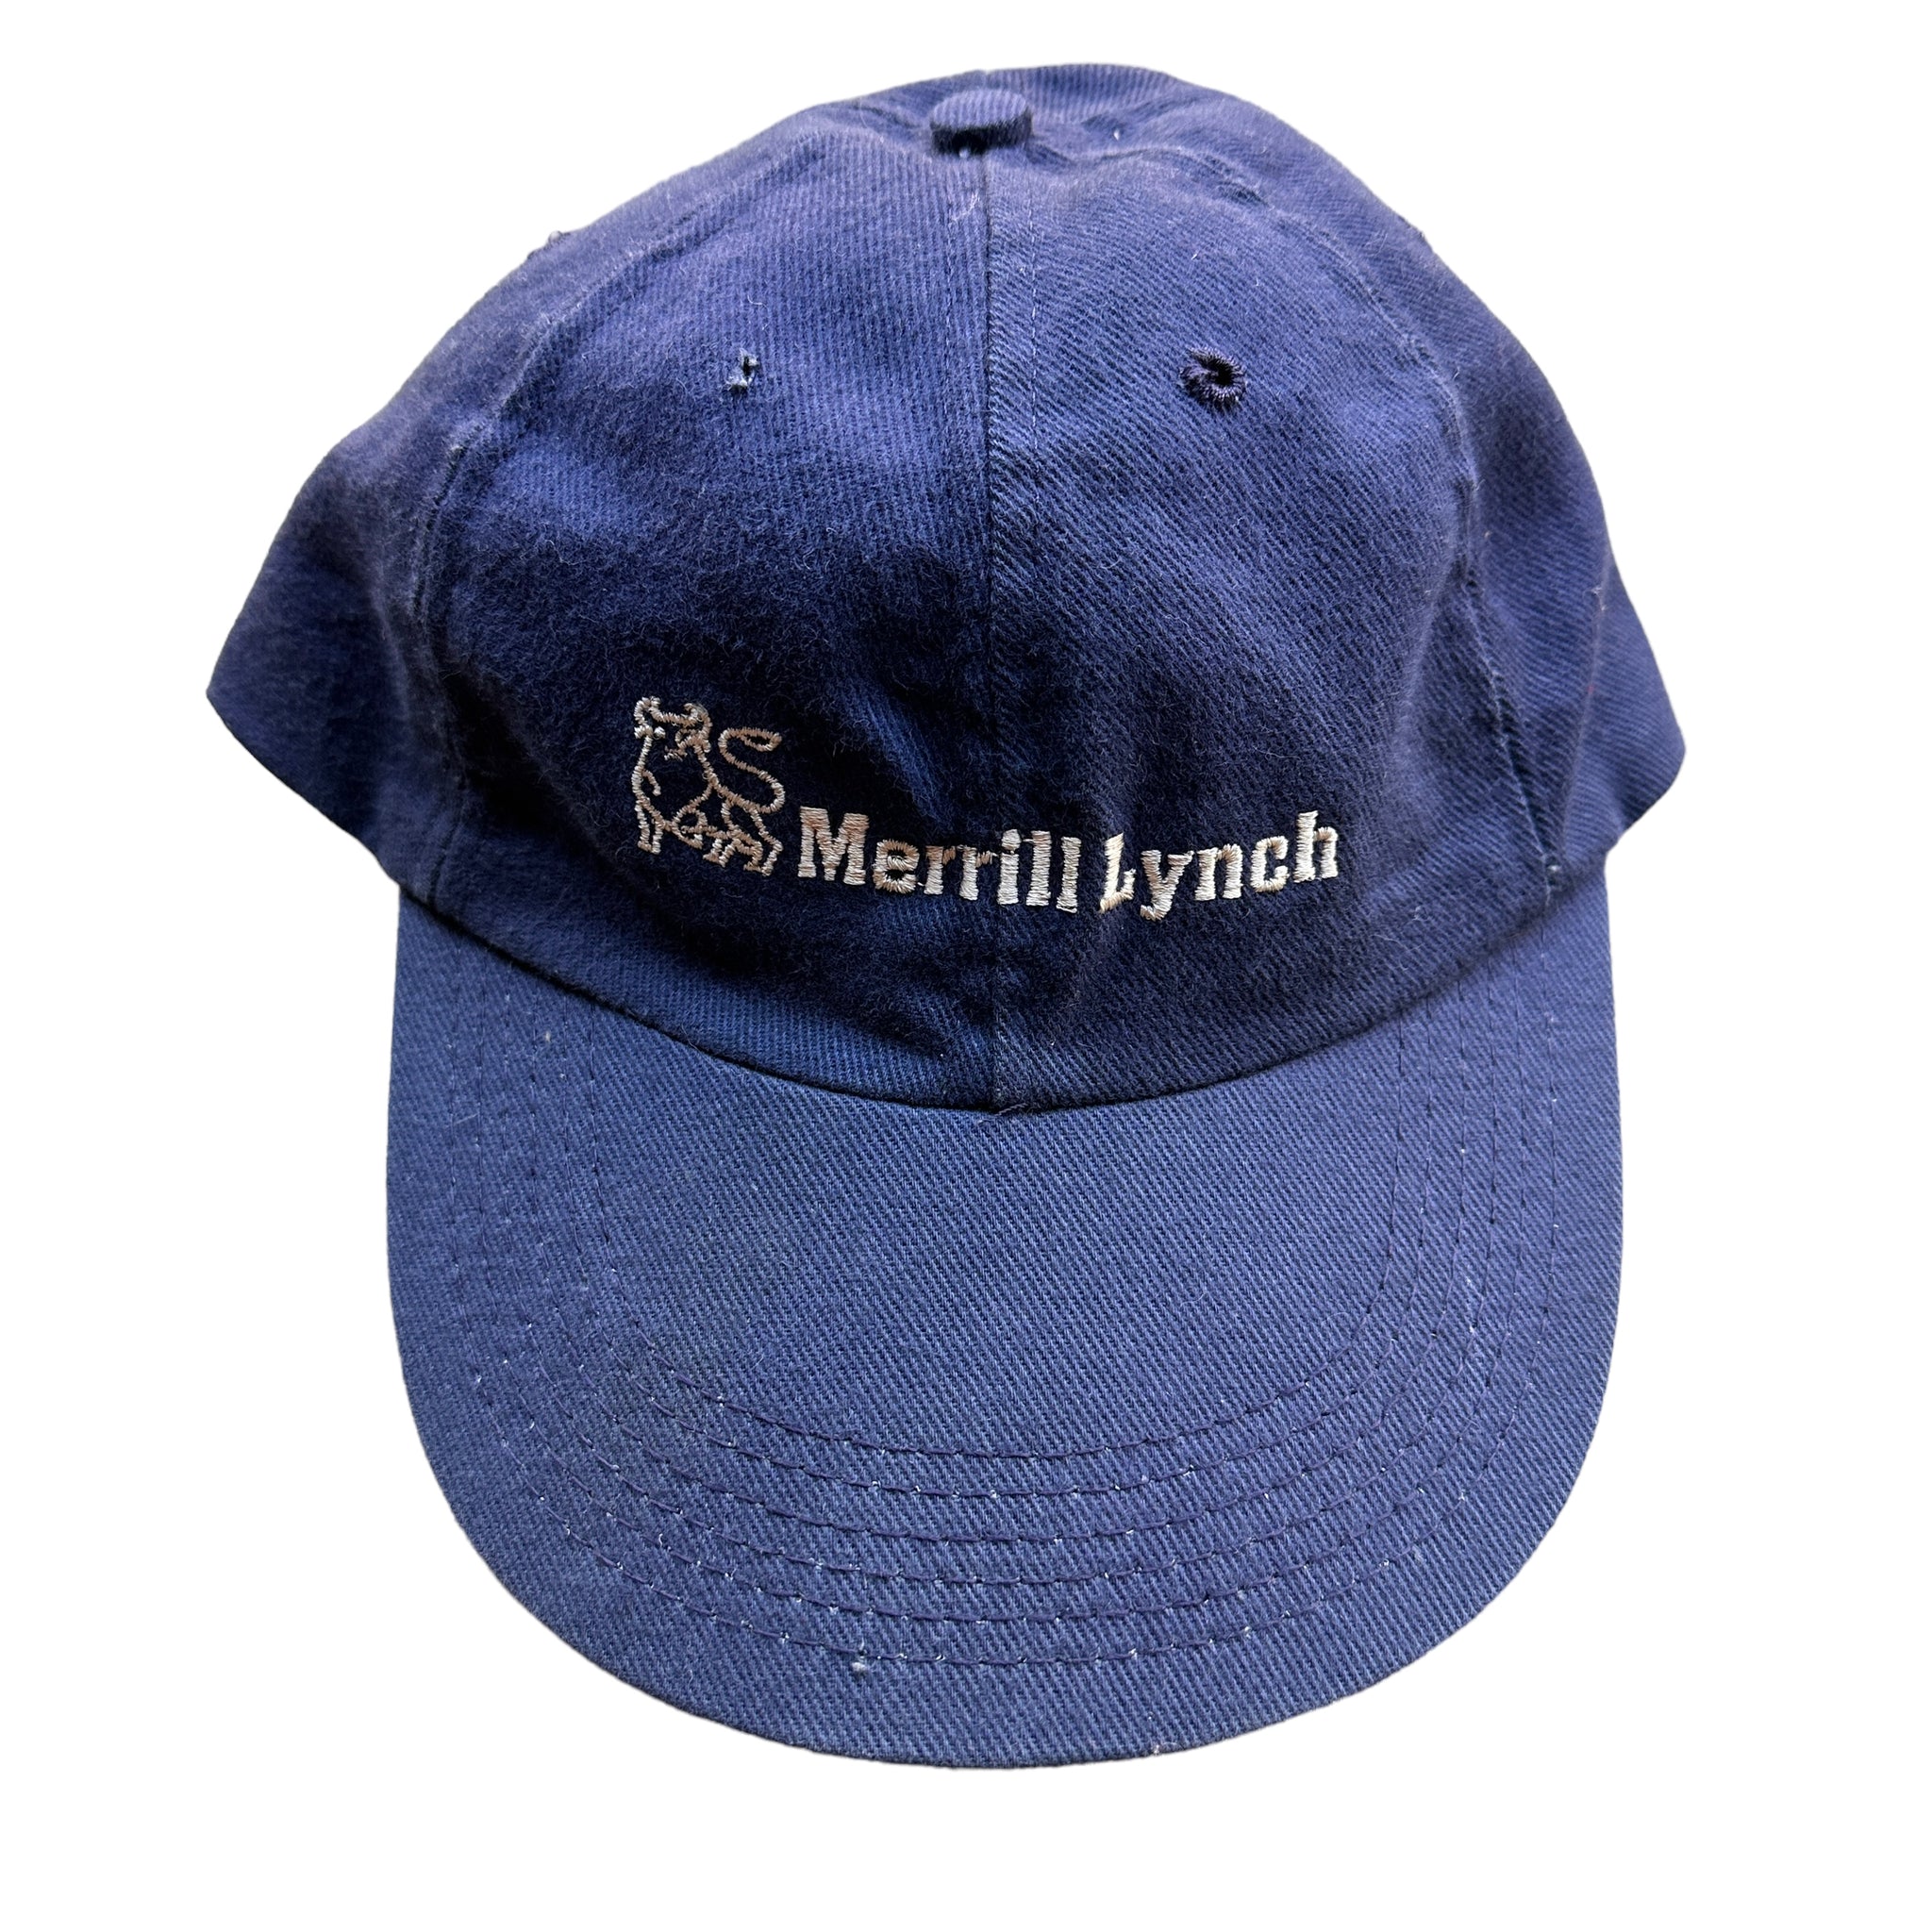 90s Merrill Lynch hat